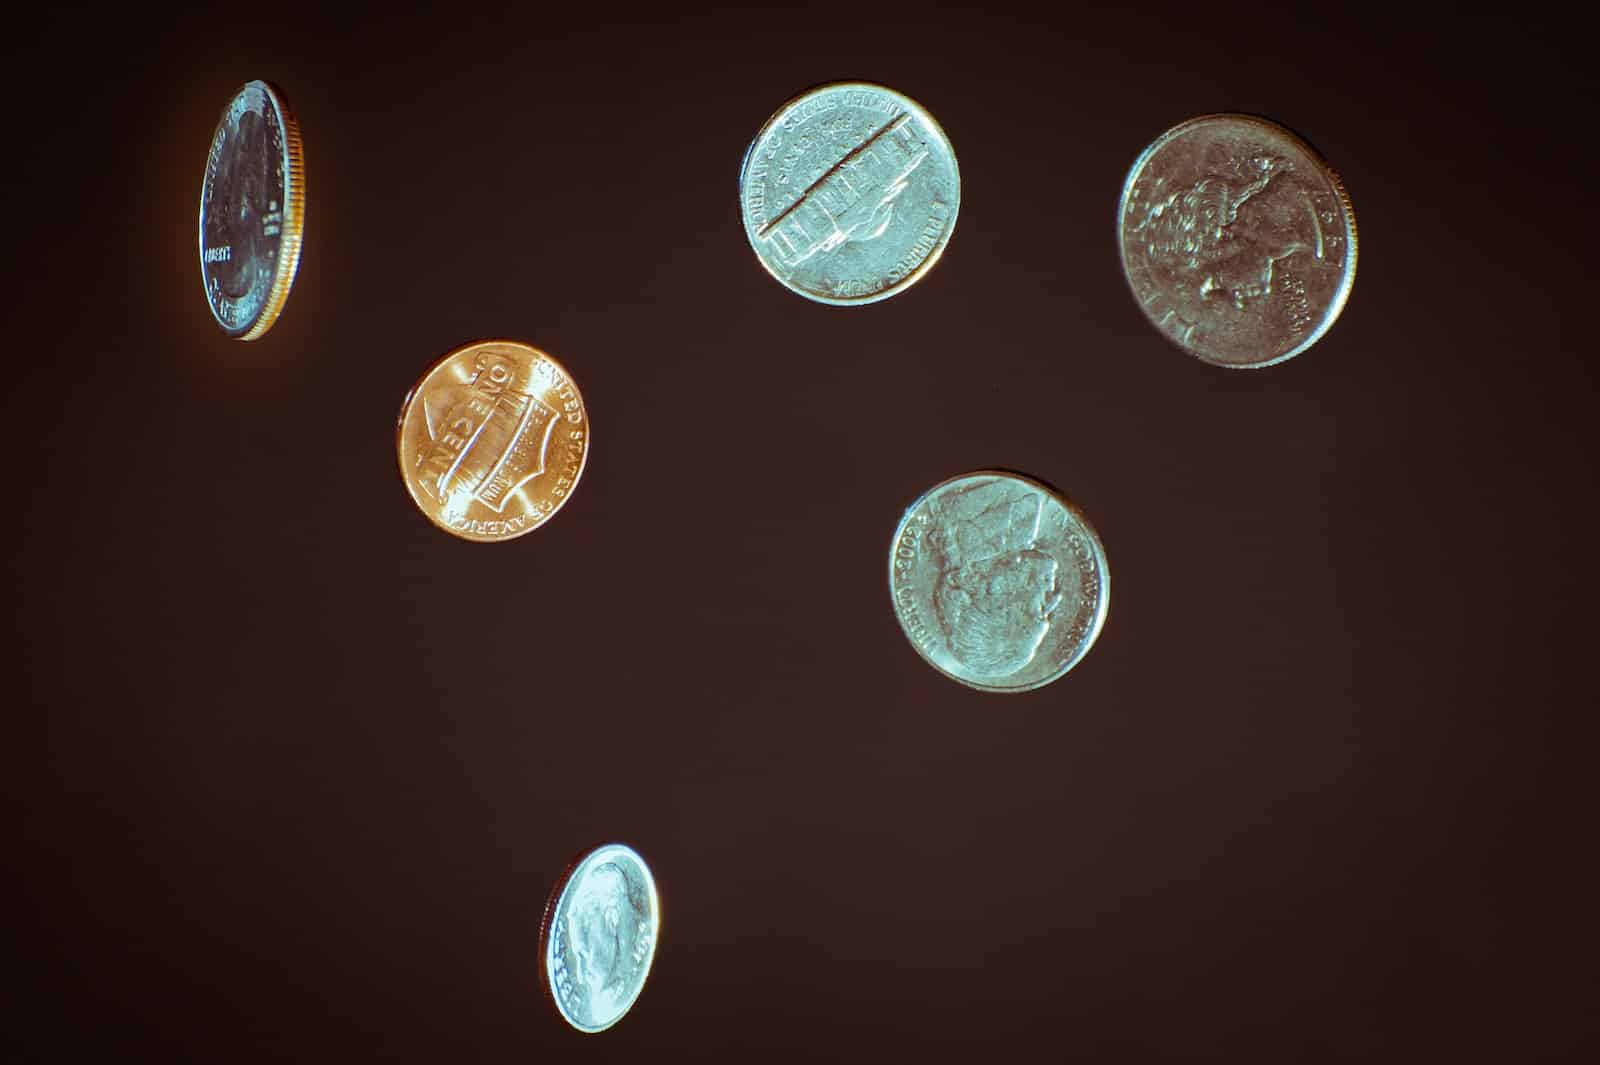 Kryptowährungen mit wenig Coins: Die Zukunft der Geldanlage?